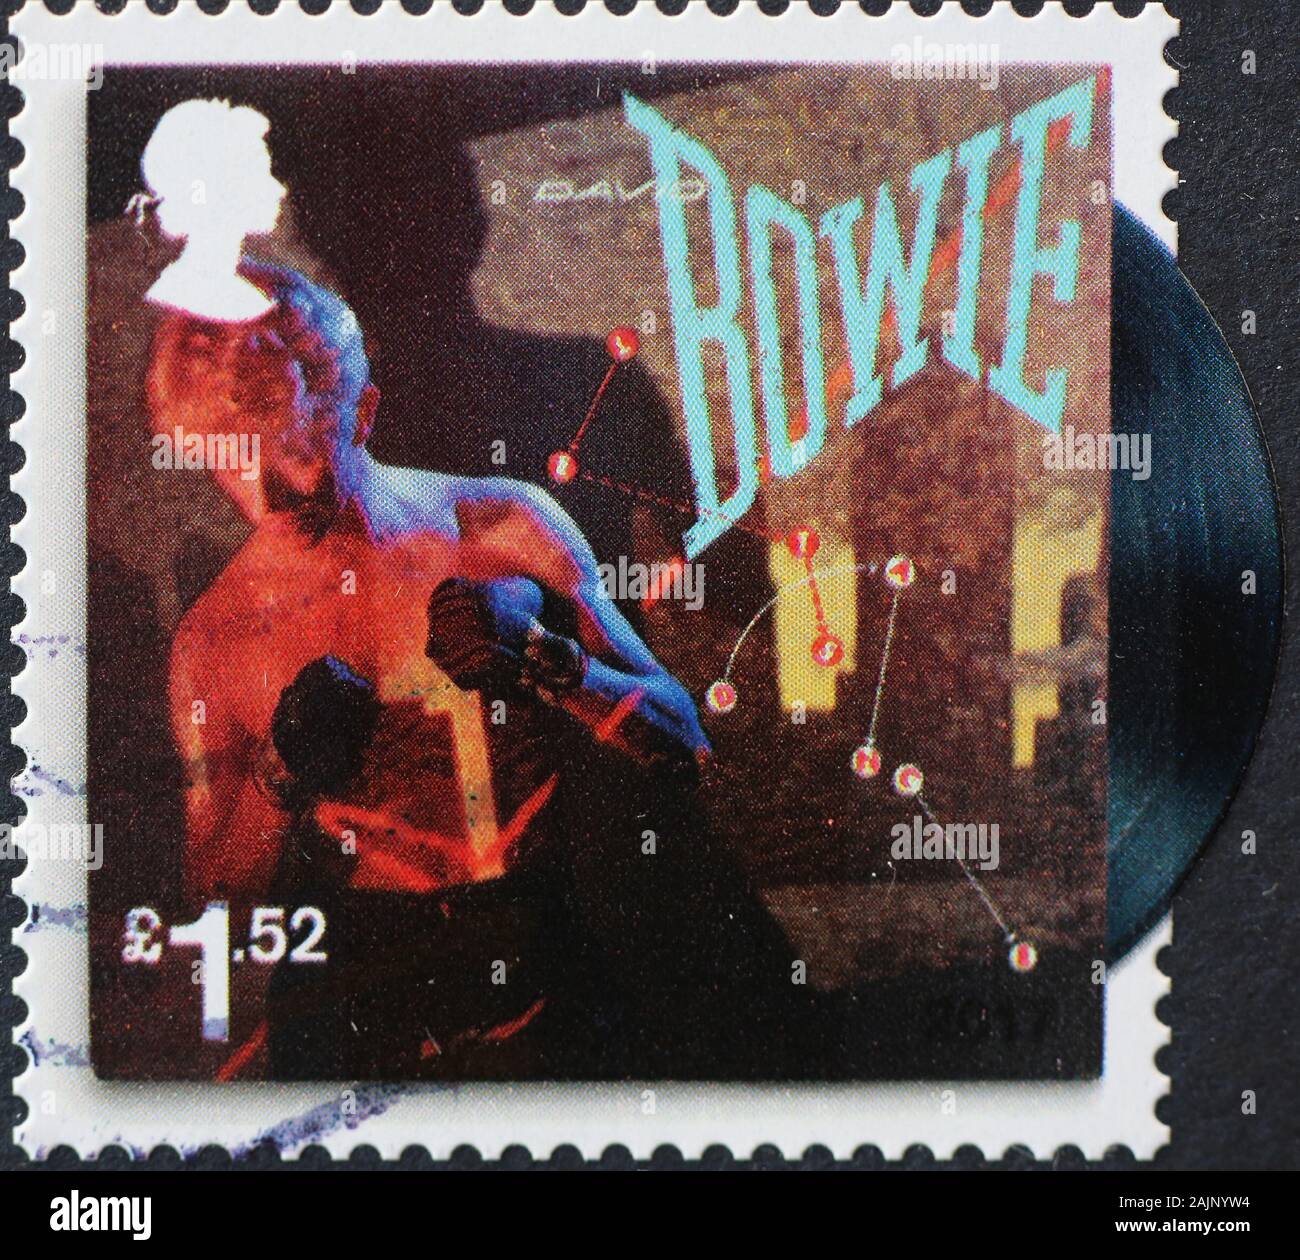 Plattencover von David Bowie auf Briefmarke Stockfoto